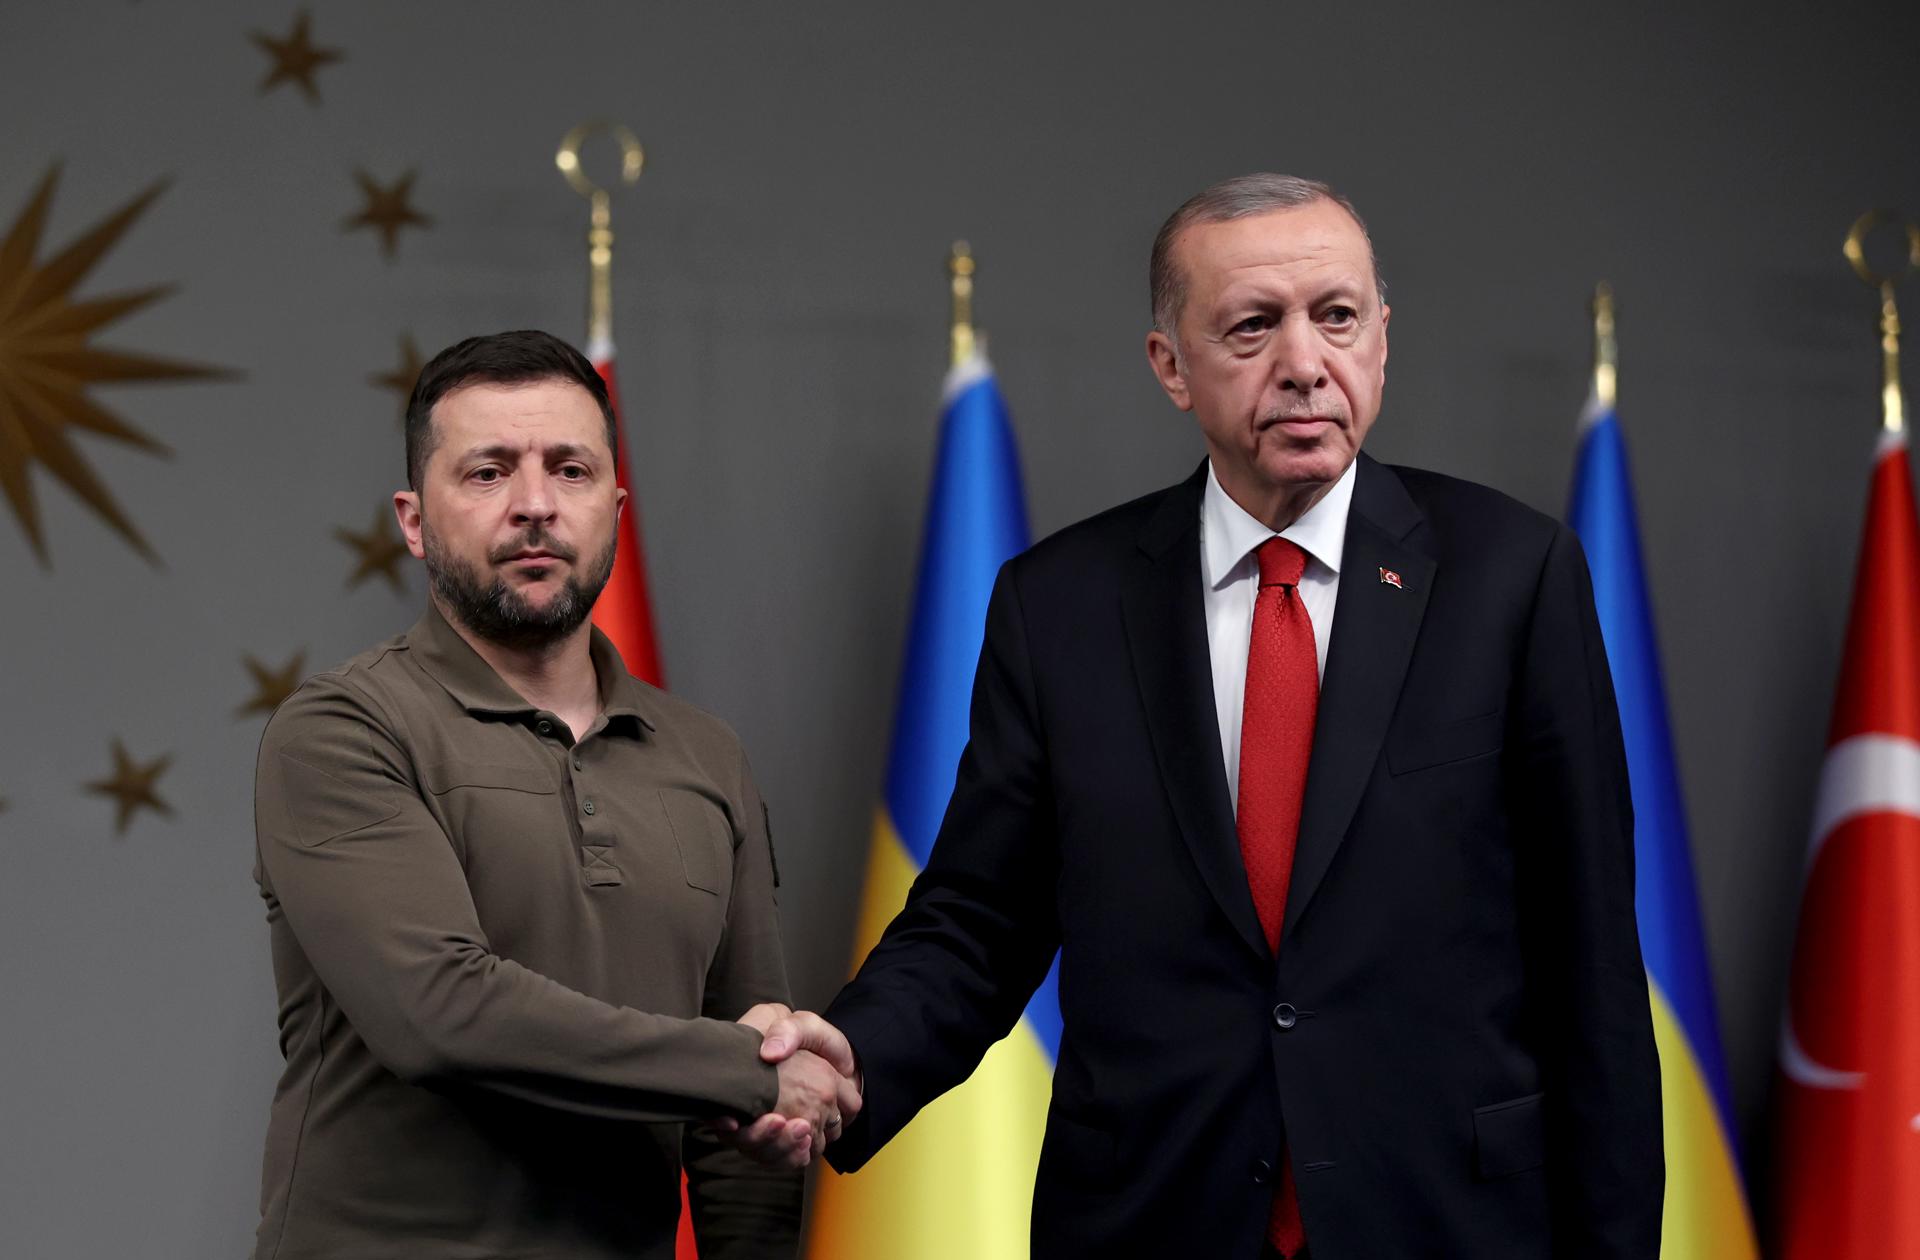 El presidente turco dice ante Zelenski que Ucrania "merece entrar en la OTAN"